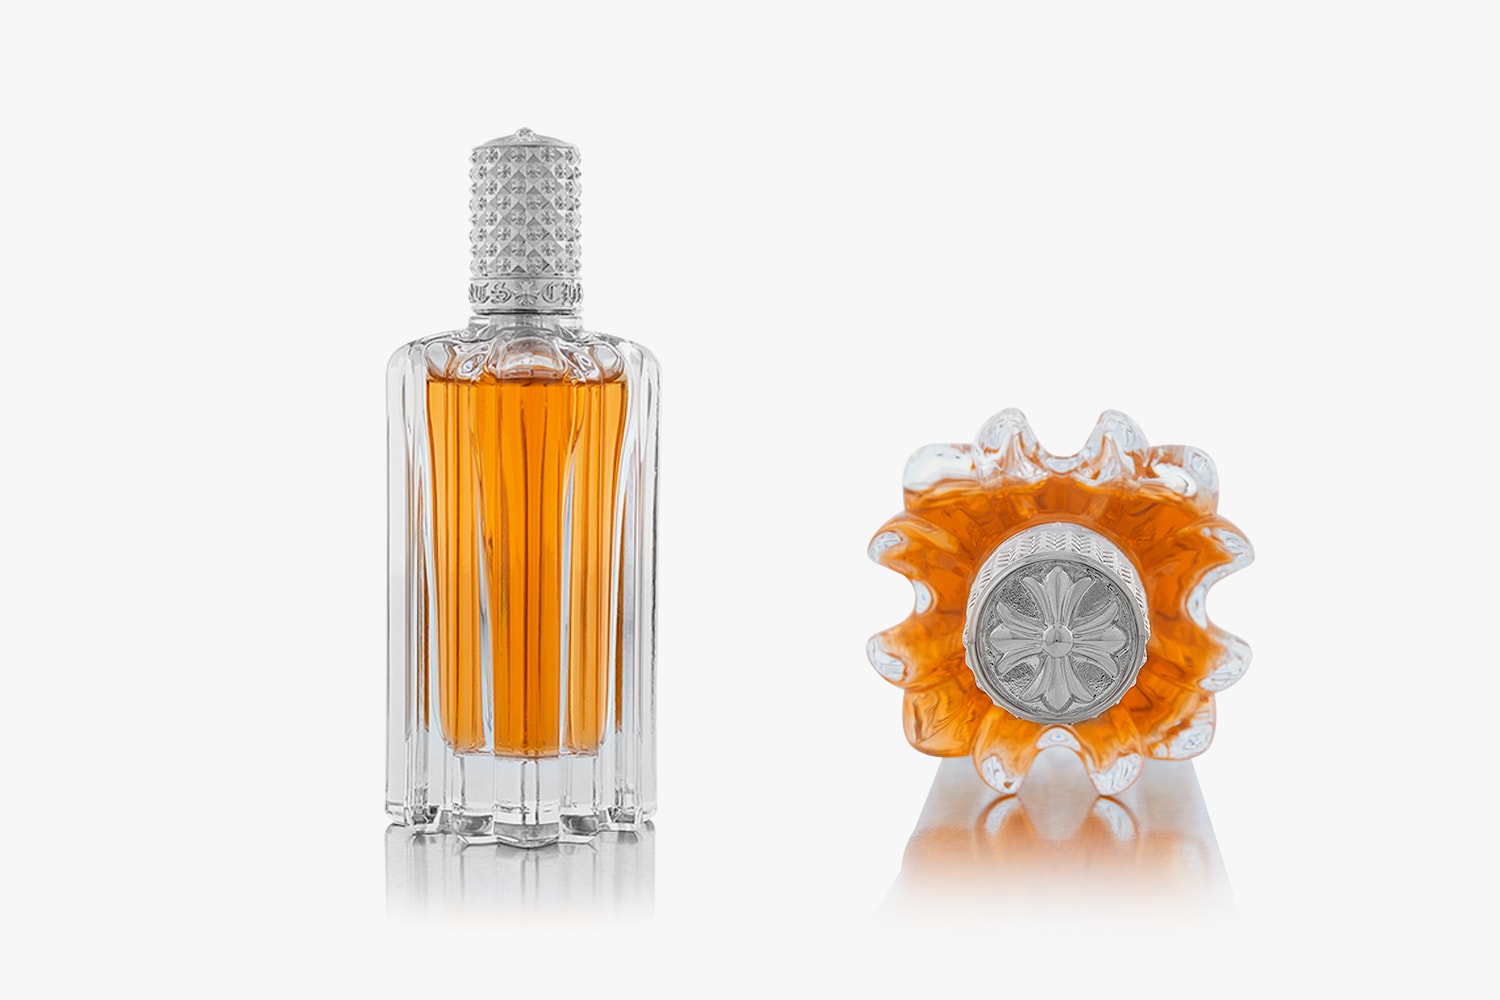 クロムハーツがブランドとしては稀なオンラインリリースを実施 Chrome Hearts Plunger +22+/+33+ Scents Nail Polish Online Release Buy Price Plunger Nail Polish Candle Perfume